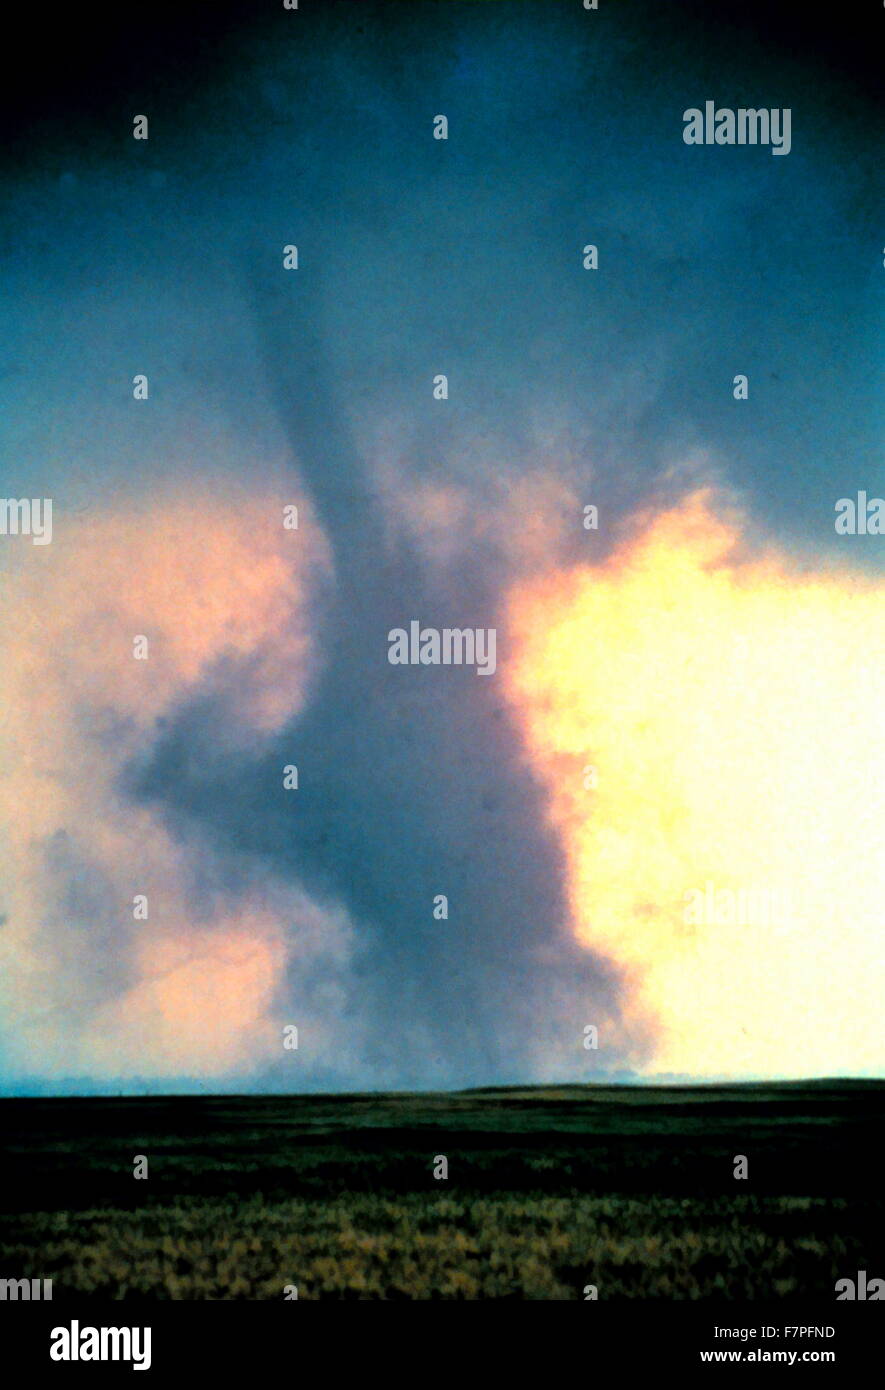 Foto von einem Tornado mit einer großen Staubwolke. Datierte 1981 Stockfoto